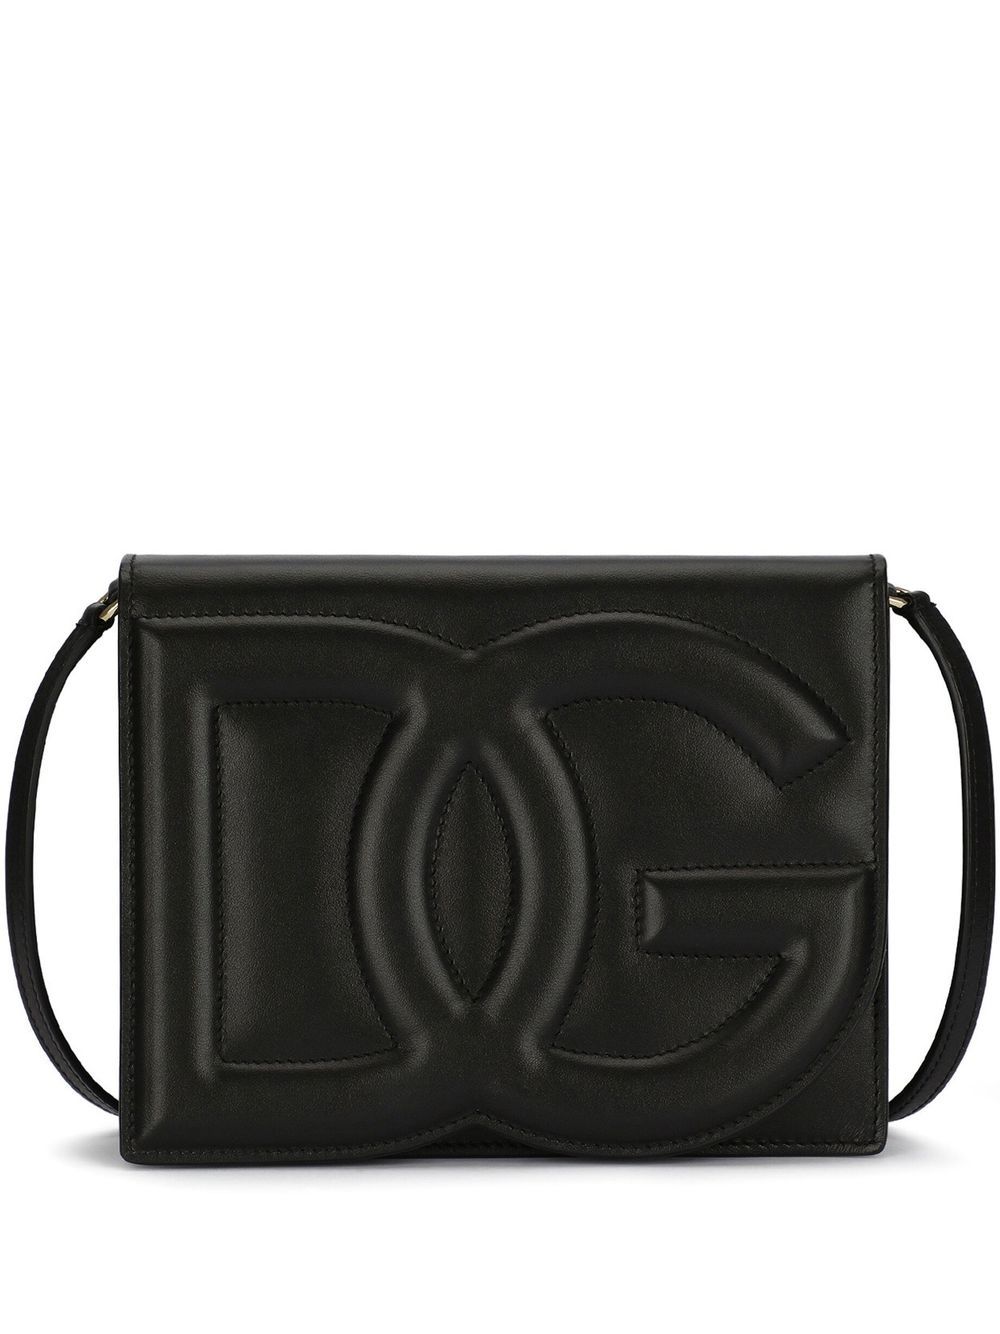 Dolce & Gabbana DG Logo Leather Crossbody Bag - Farfetch